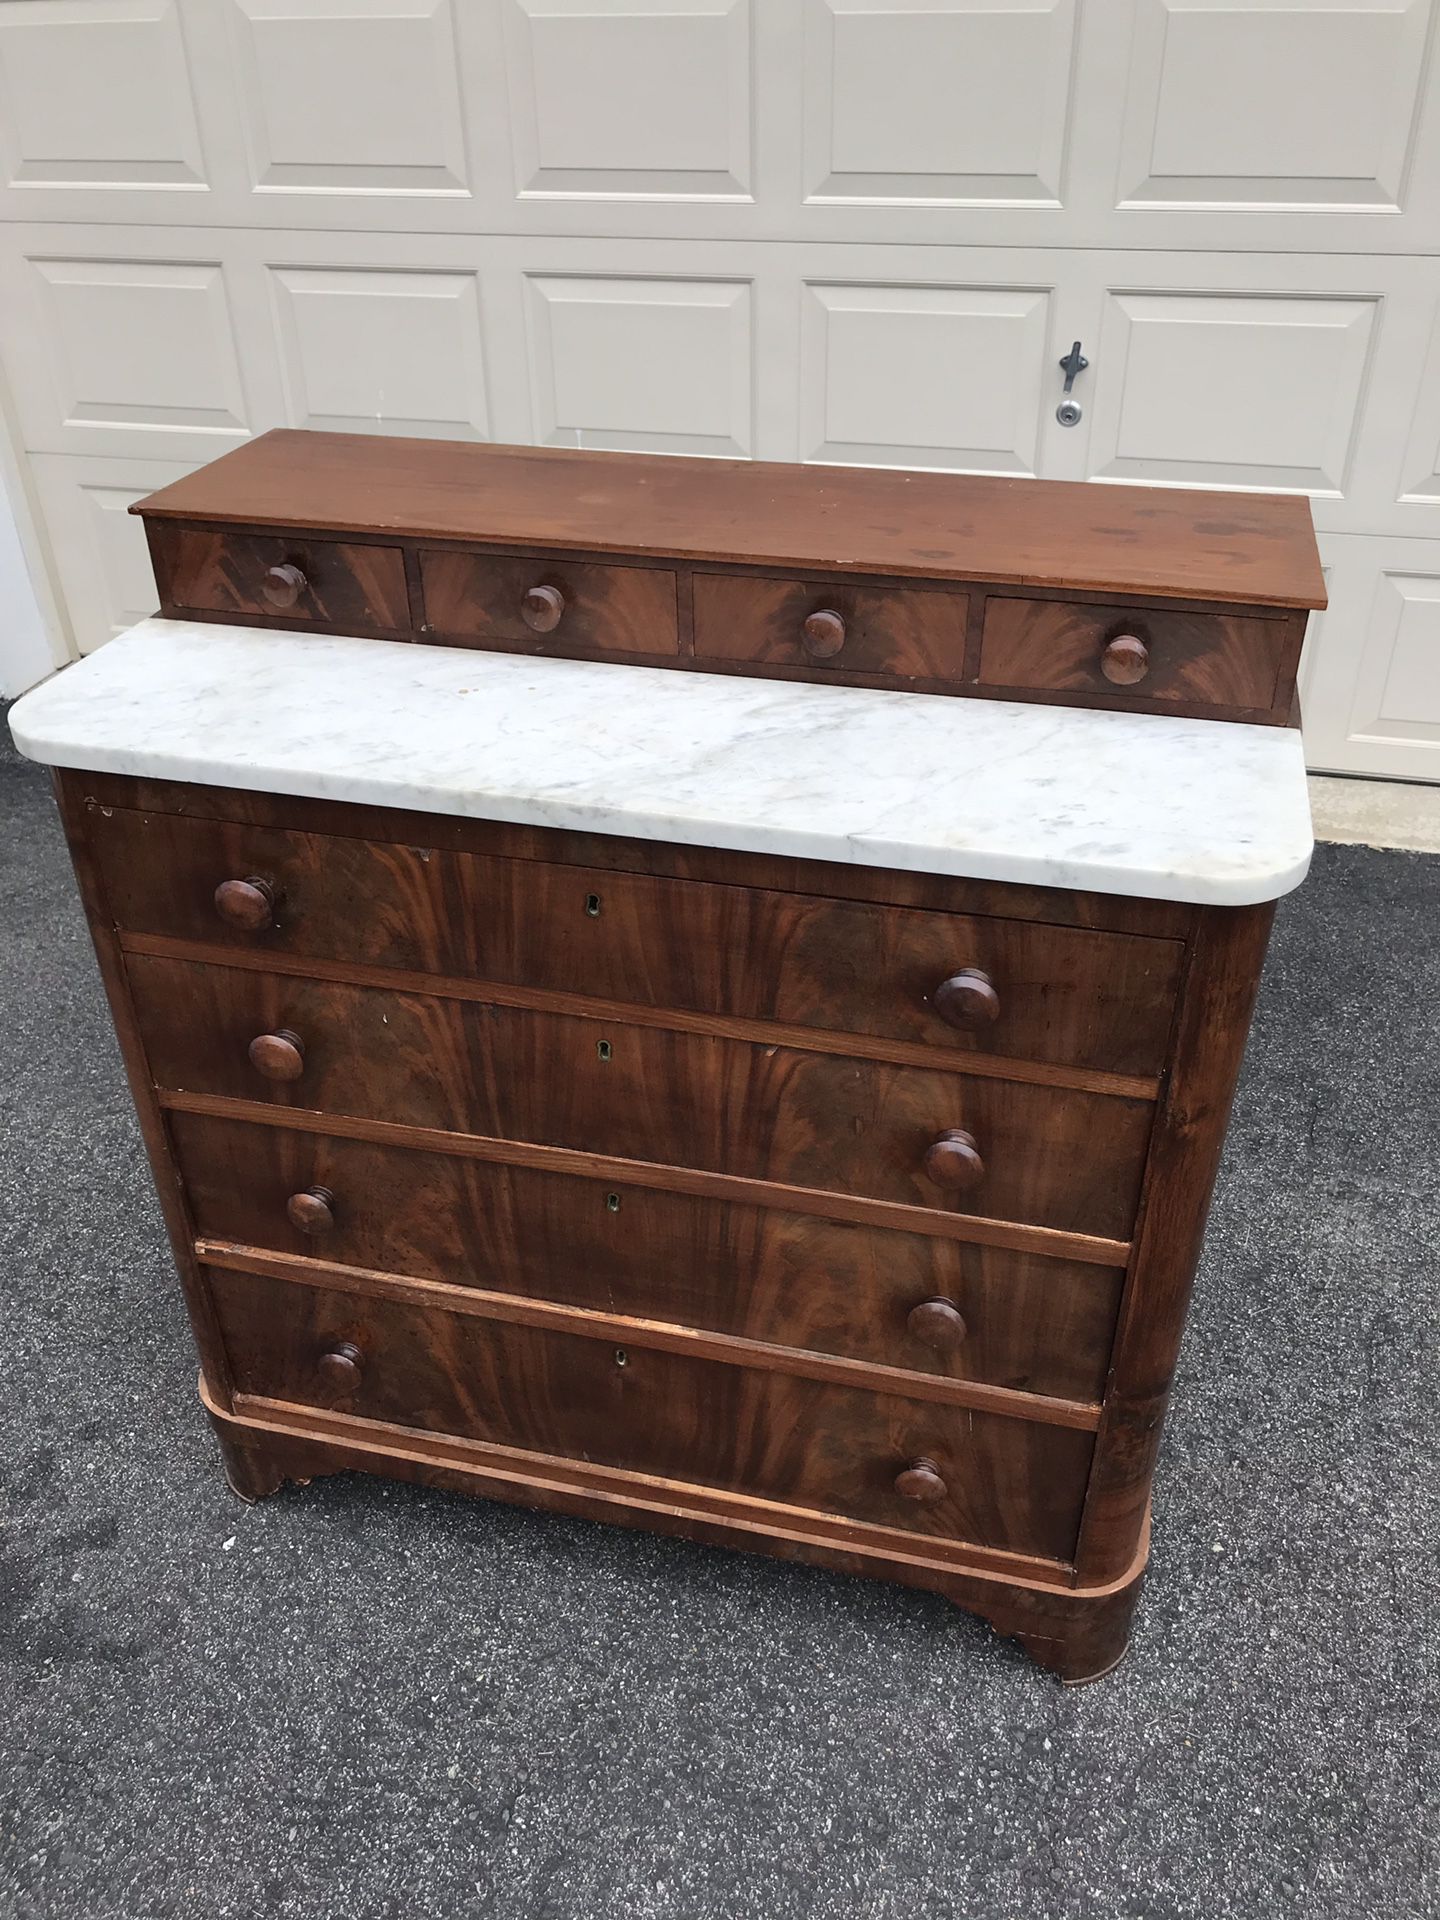 Antique wooden & marble chest/dresser